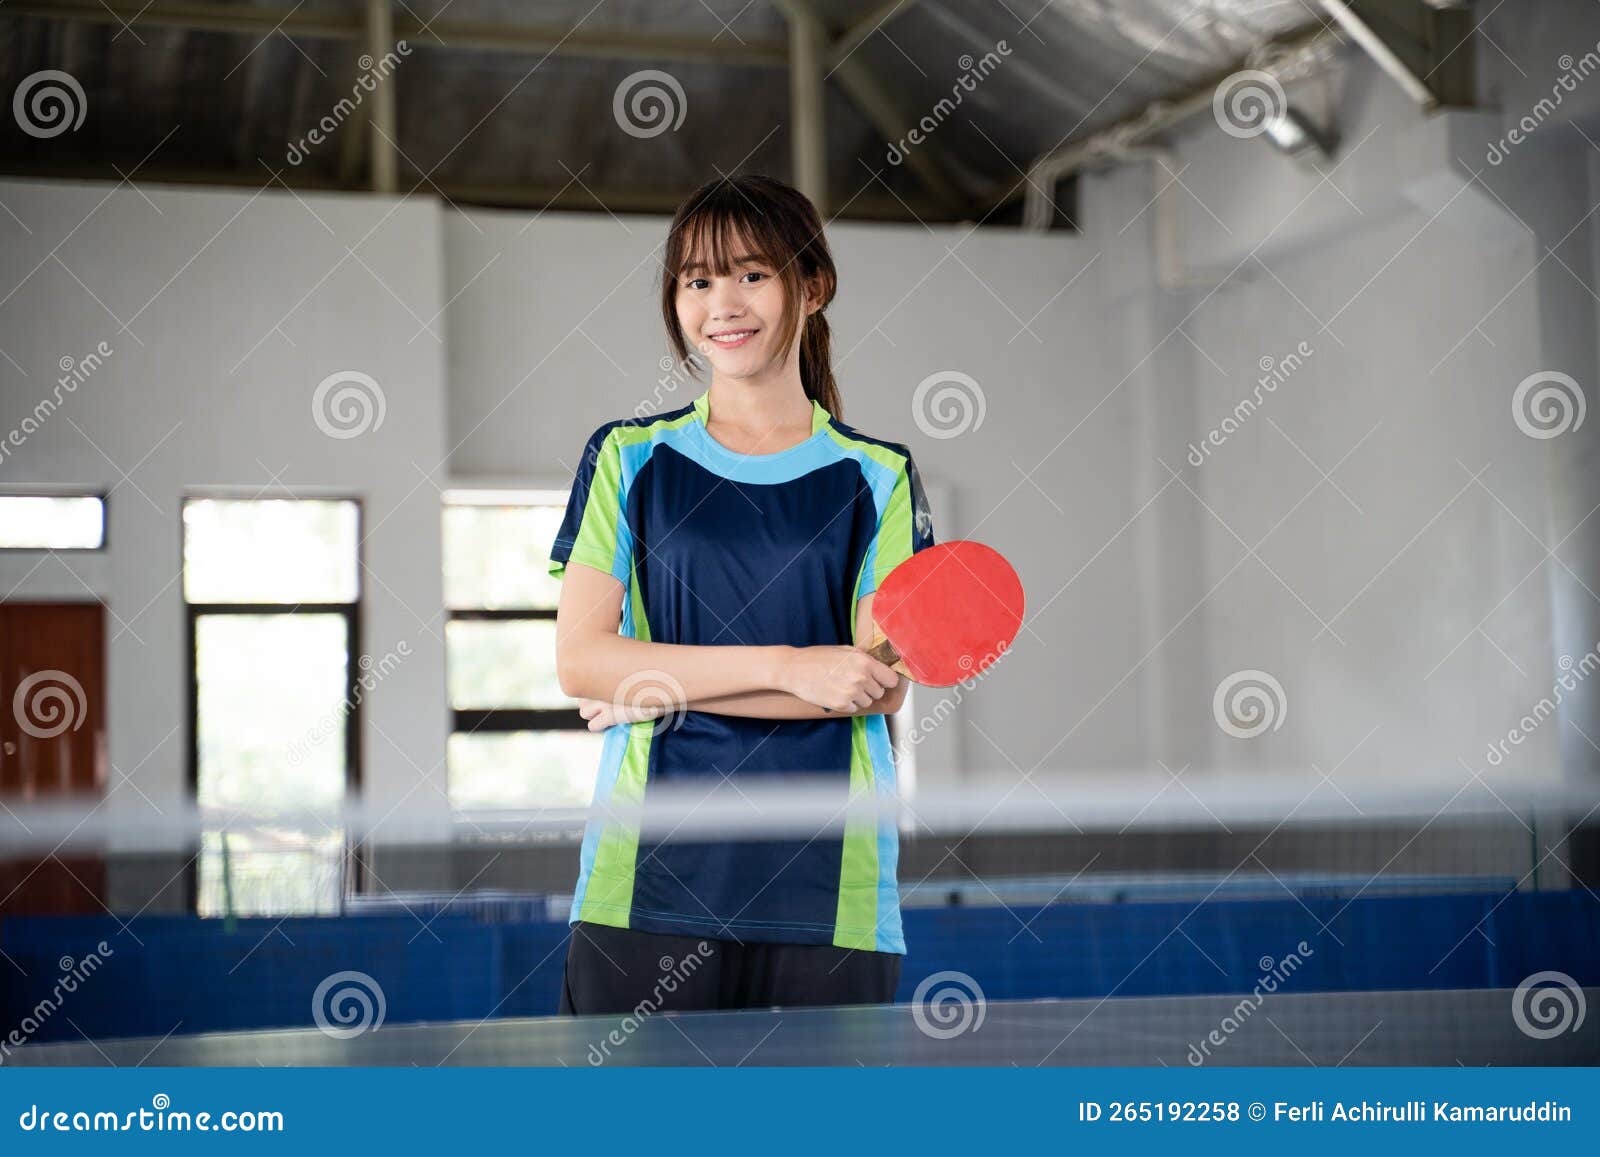 Paleta de ping pong cruzada con pelota